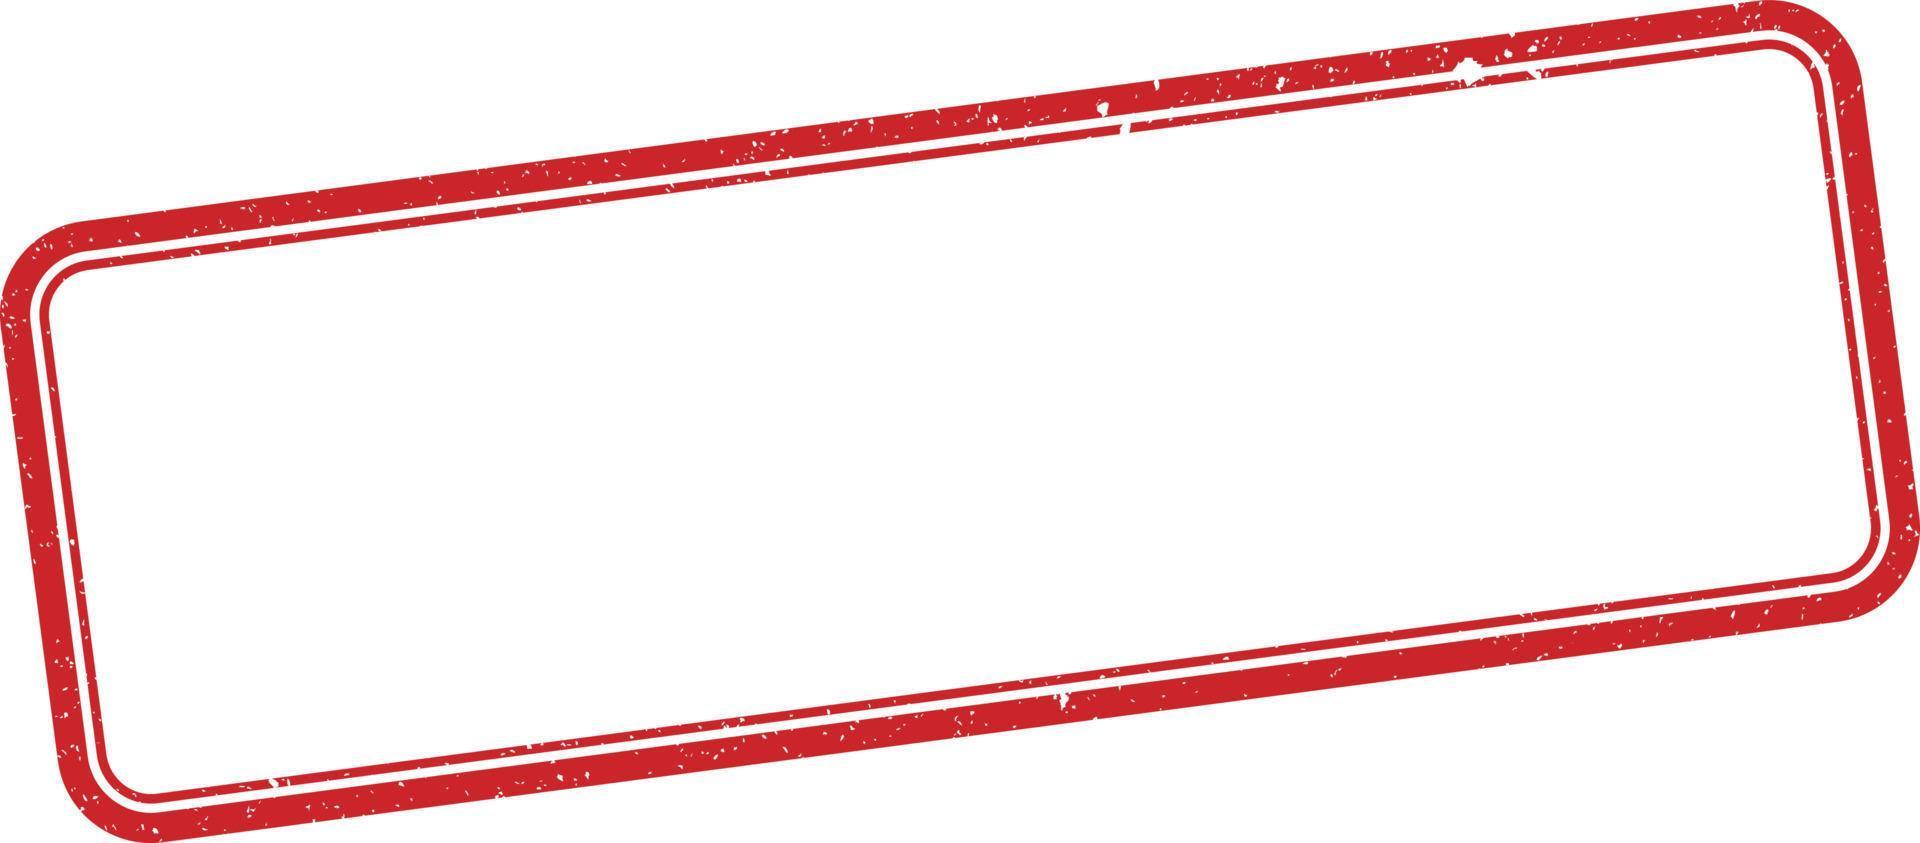 Red Stamp Frame vector